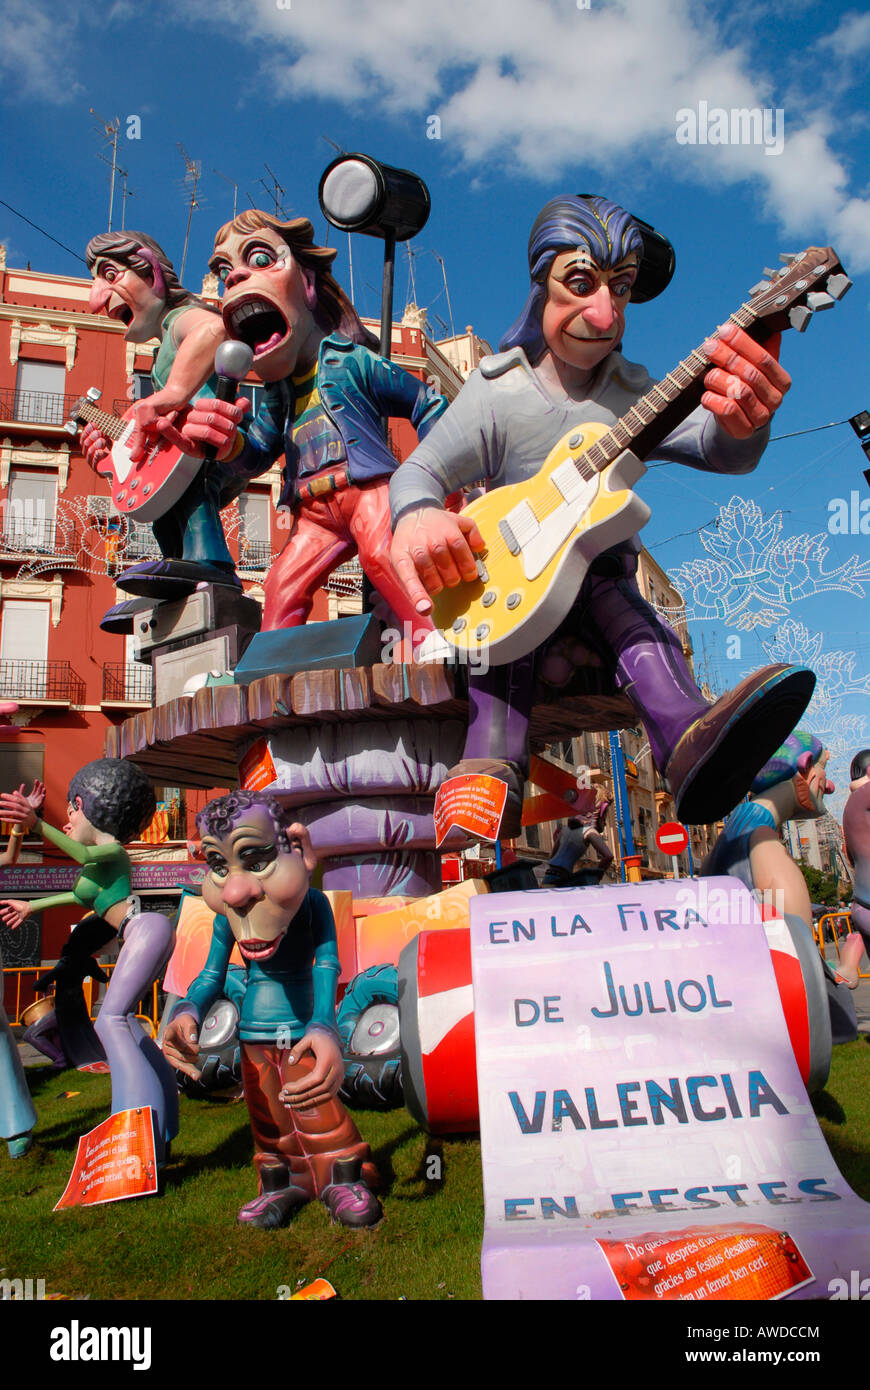 Papier maché coloré des chiffres (les Rolling Stones) à la 'Fallas' Festival, Valencia, Espagne, Europe Banque D'Images